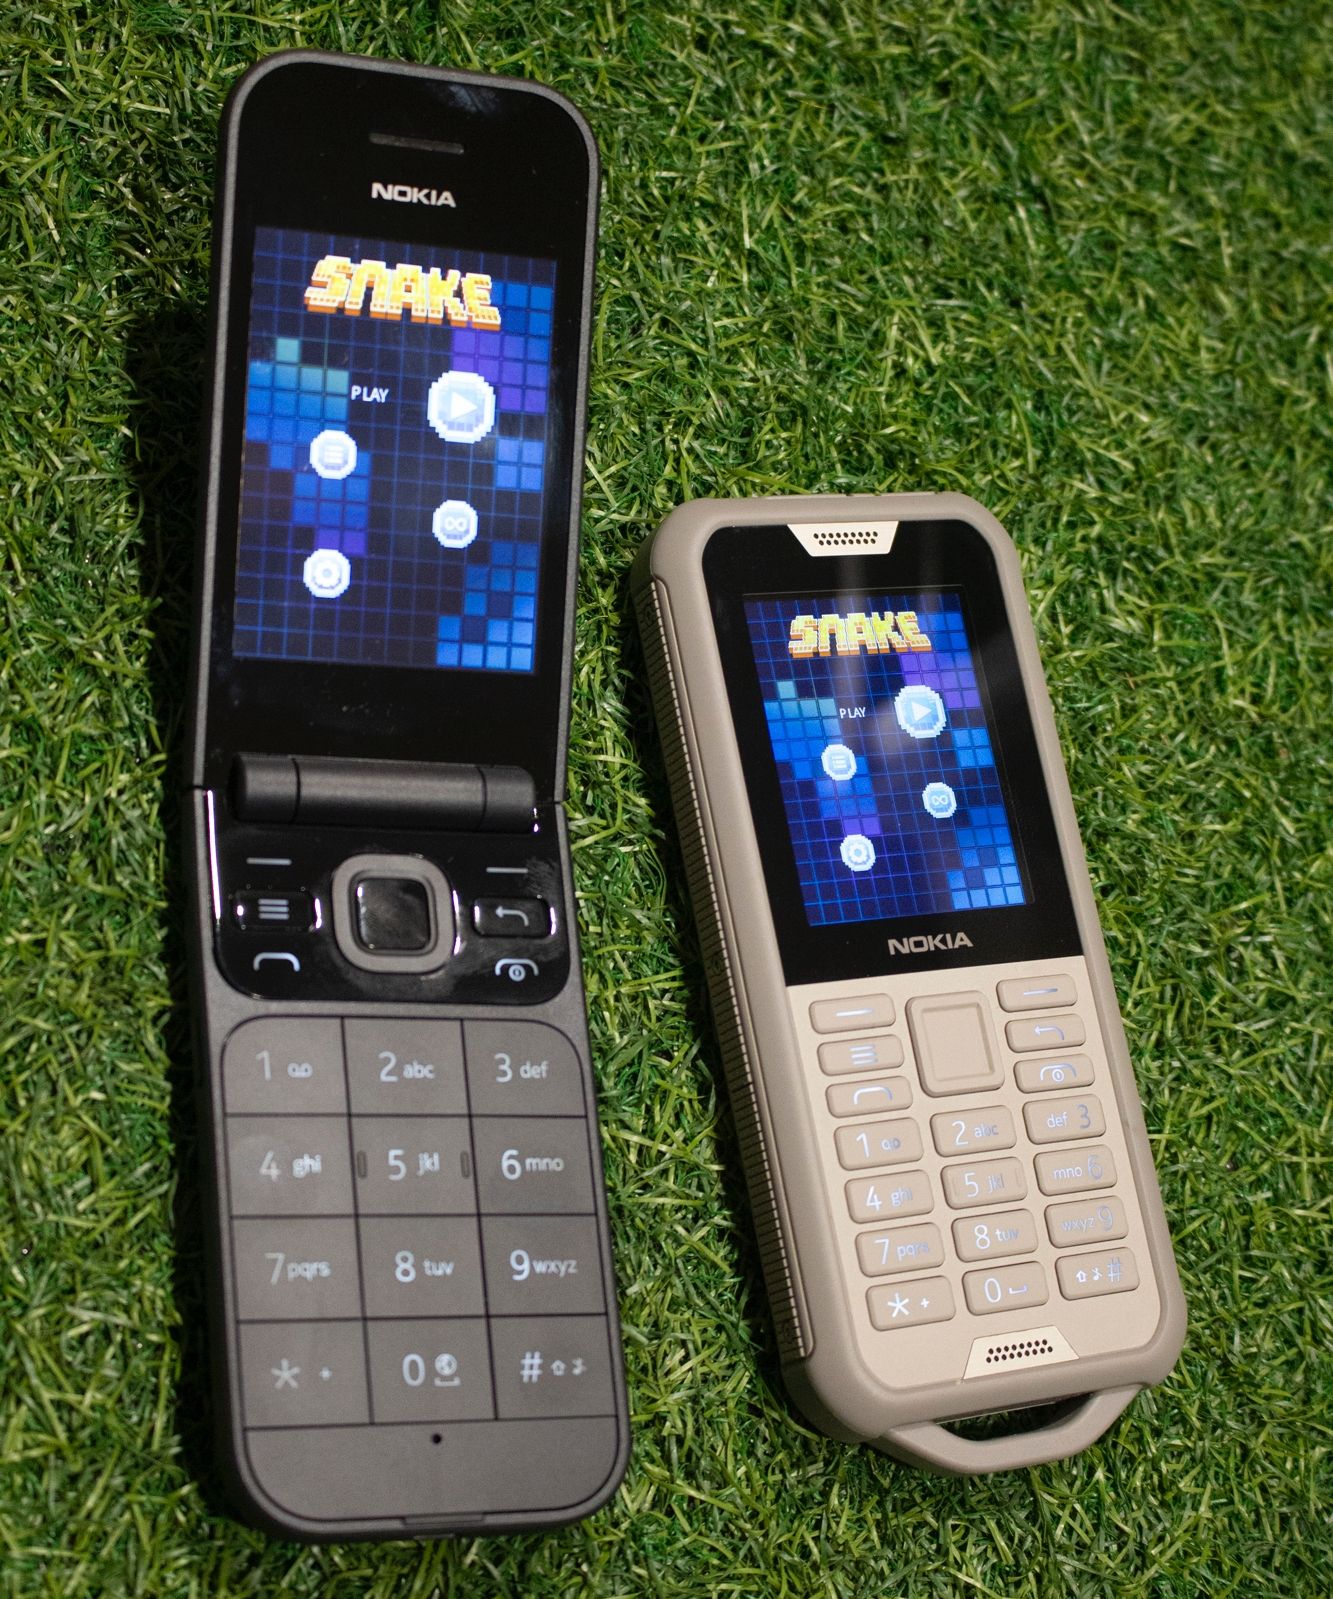 Nokia 800 Tough Phone - Cool Material